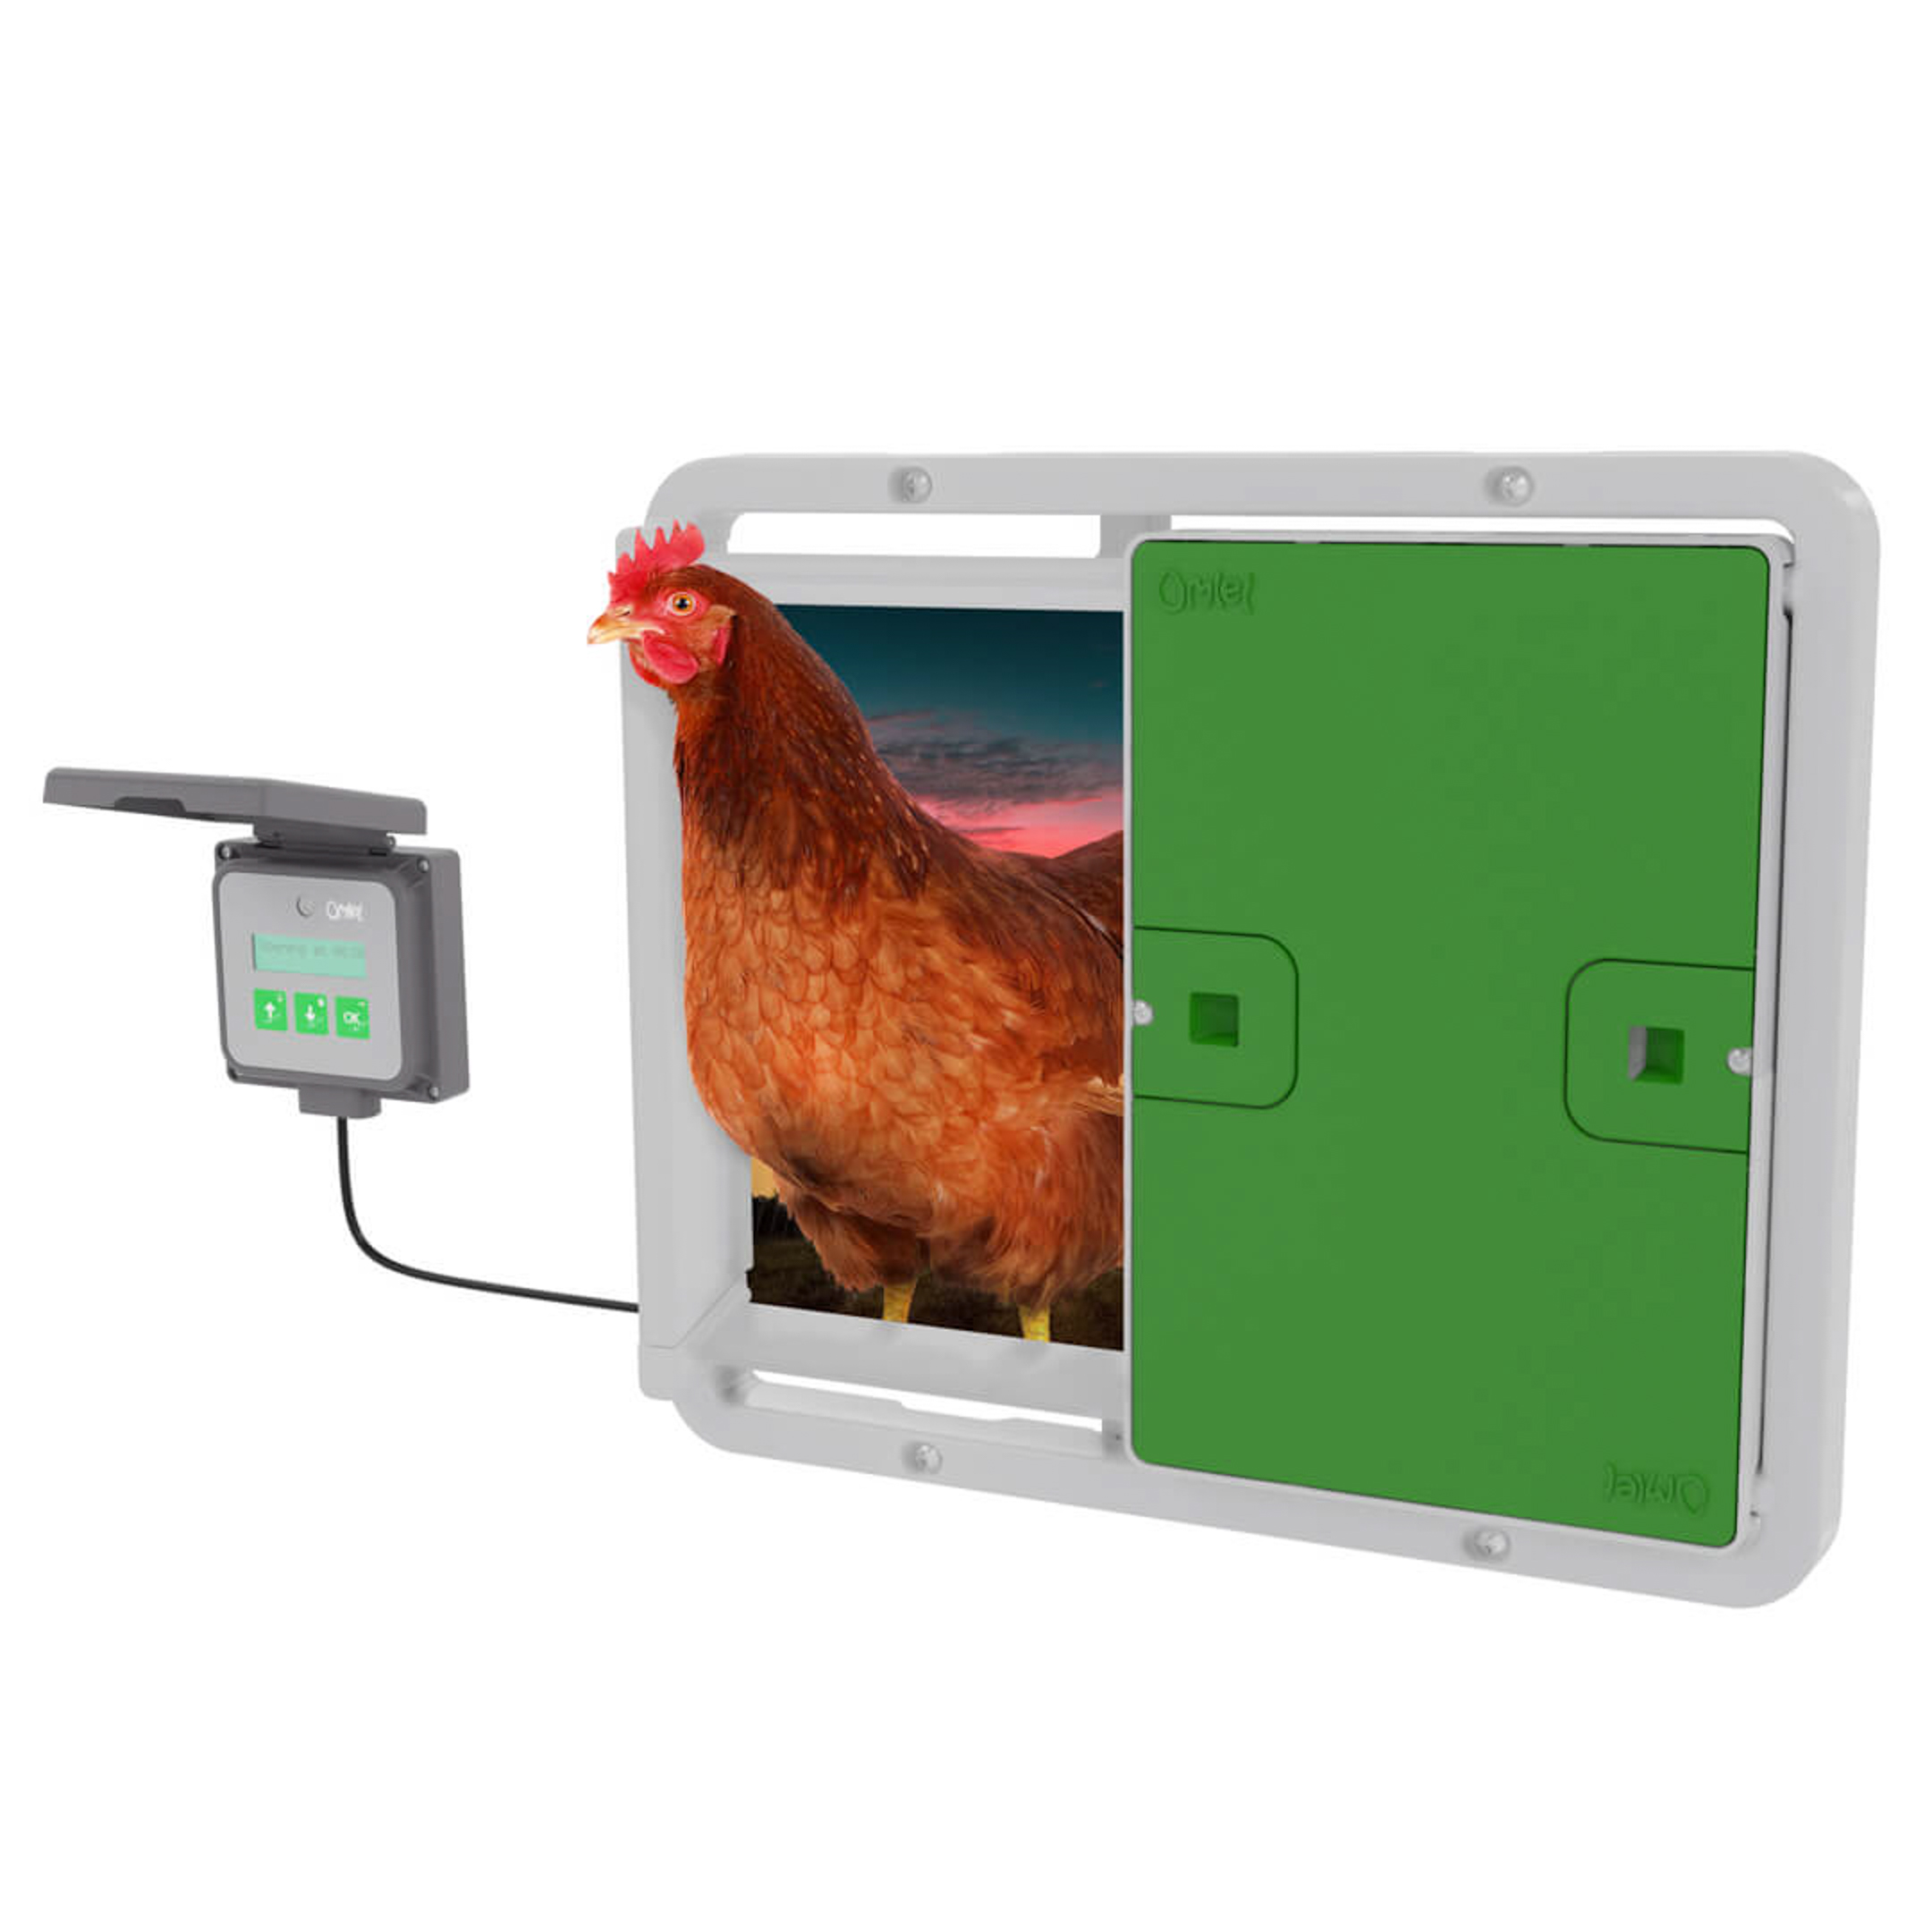 baseren Sportschool Ritmisch Automatische deuropener voor kippenhok | Omlet